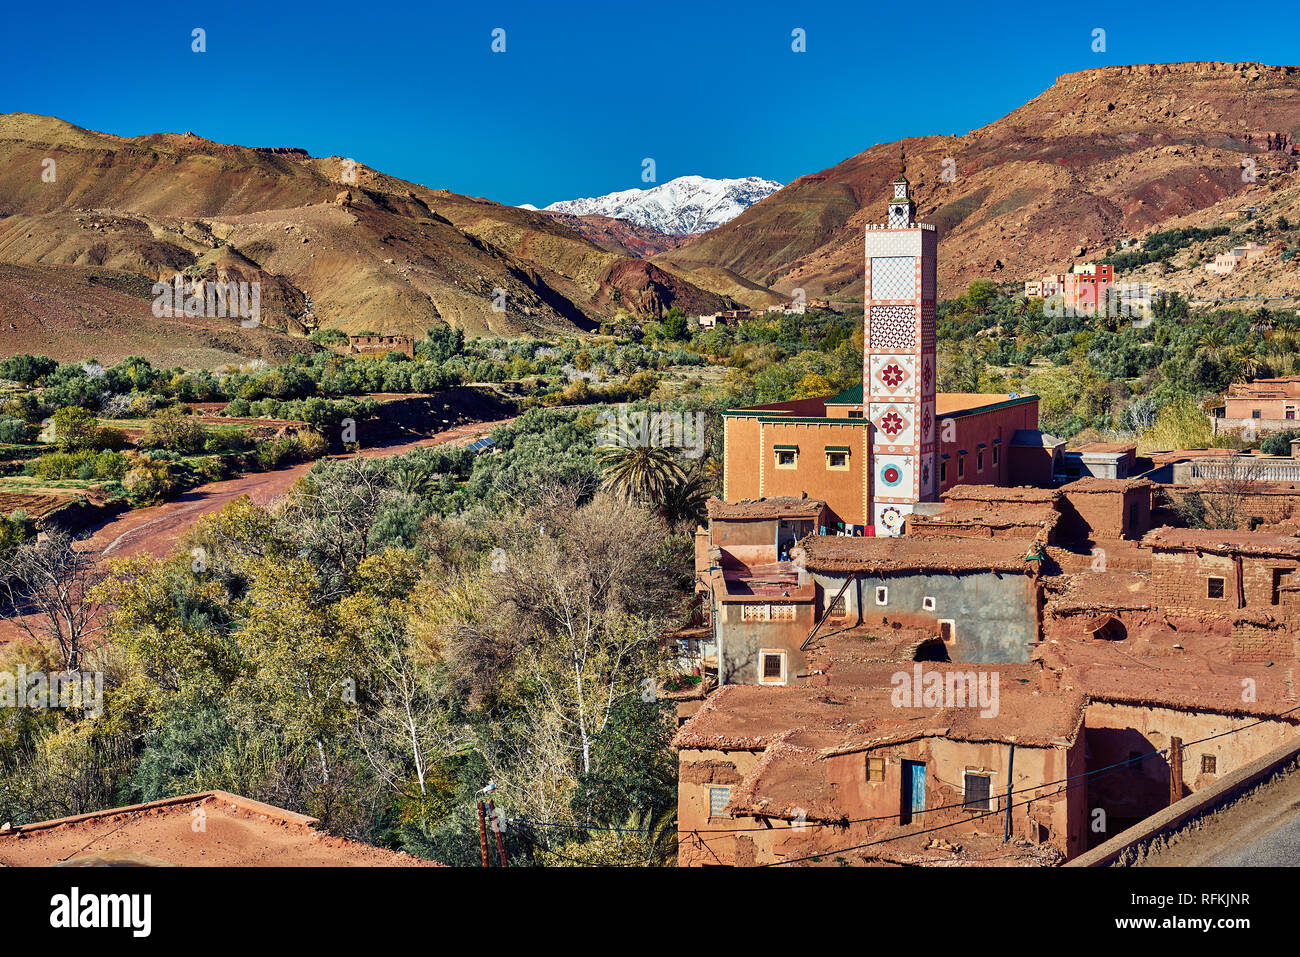 Maisons de village en briques de boue traditionnelles, minaret/mosquée à la décoration colorée avec montagnes enneigées de l'Atlas. Pris près de Tiseldei, Ouarzazate, Maroc Banque D'Images